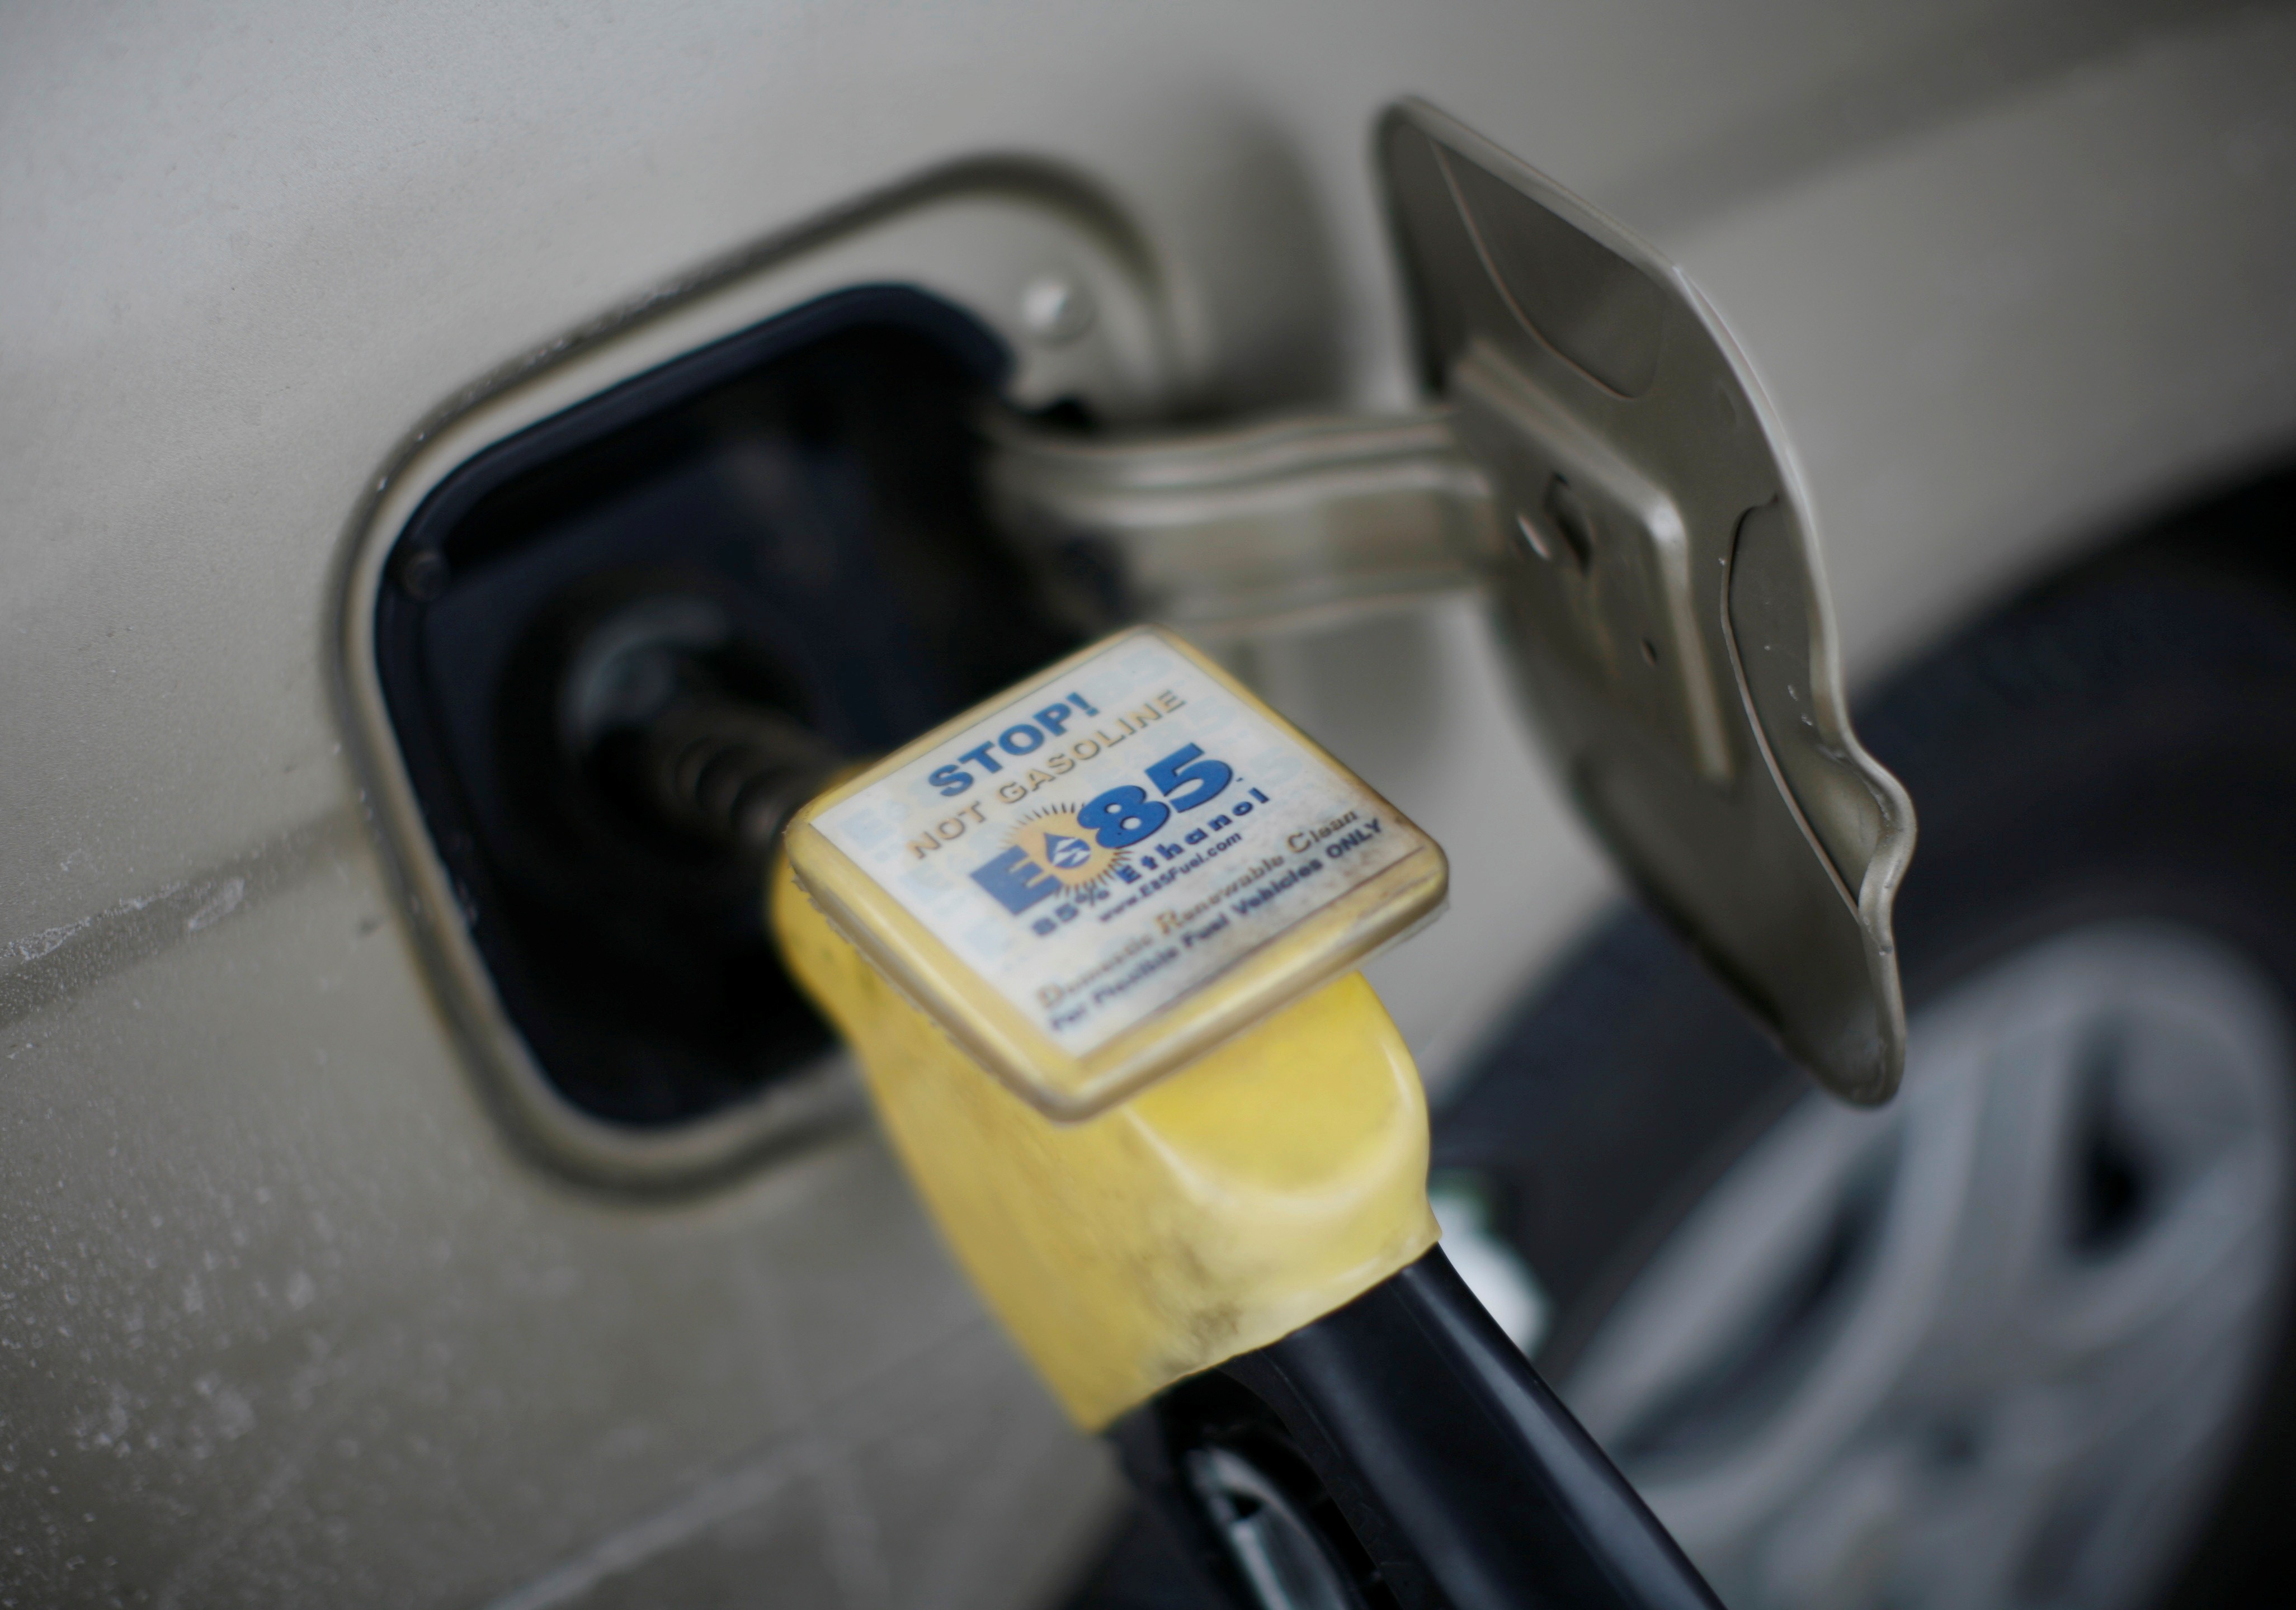 Biocombustível E85 etanol sendo bombeado em veículo em posto de gasolina em Nevada, no Iowa, Estados Unidos (Foto: Jason Reed/Reuters)